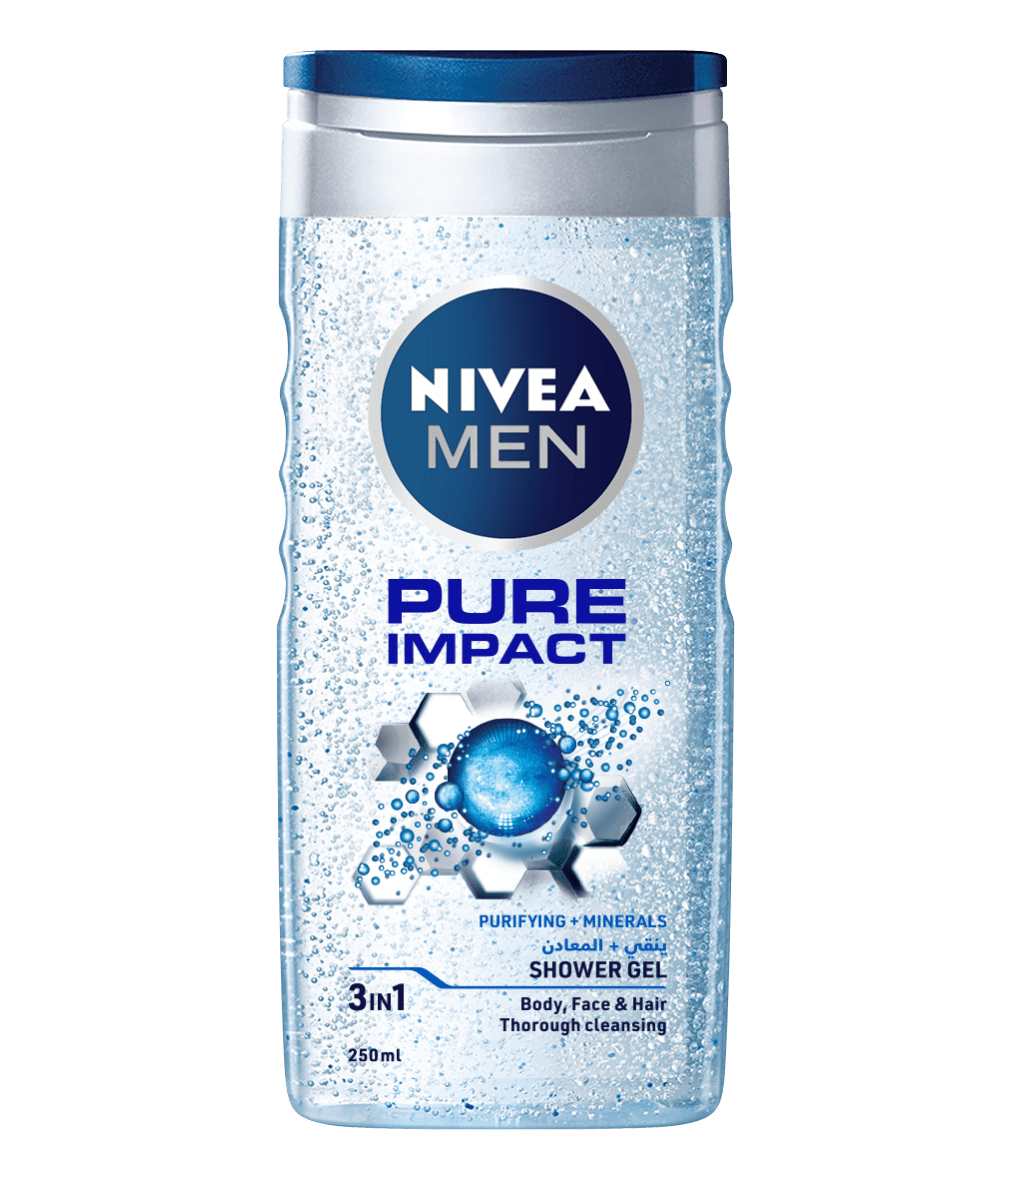 80892 Nivea Men Pure Impact shower gel 250ml clean packshot 